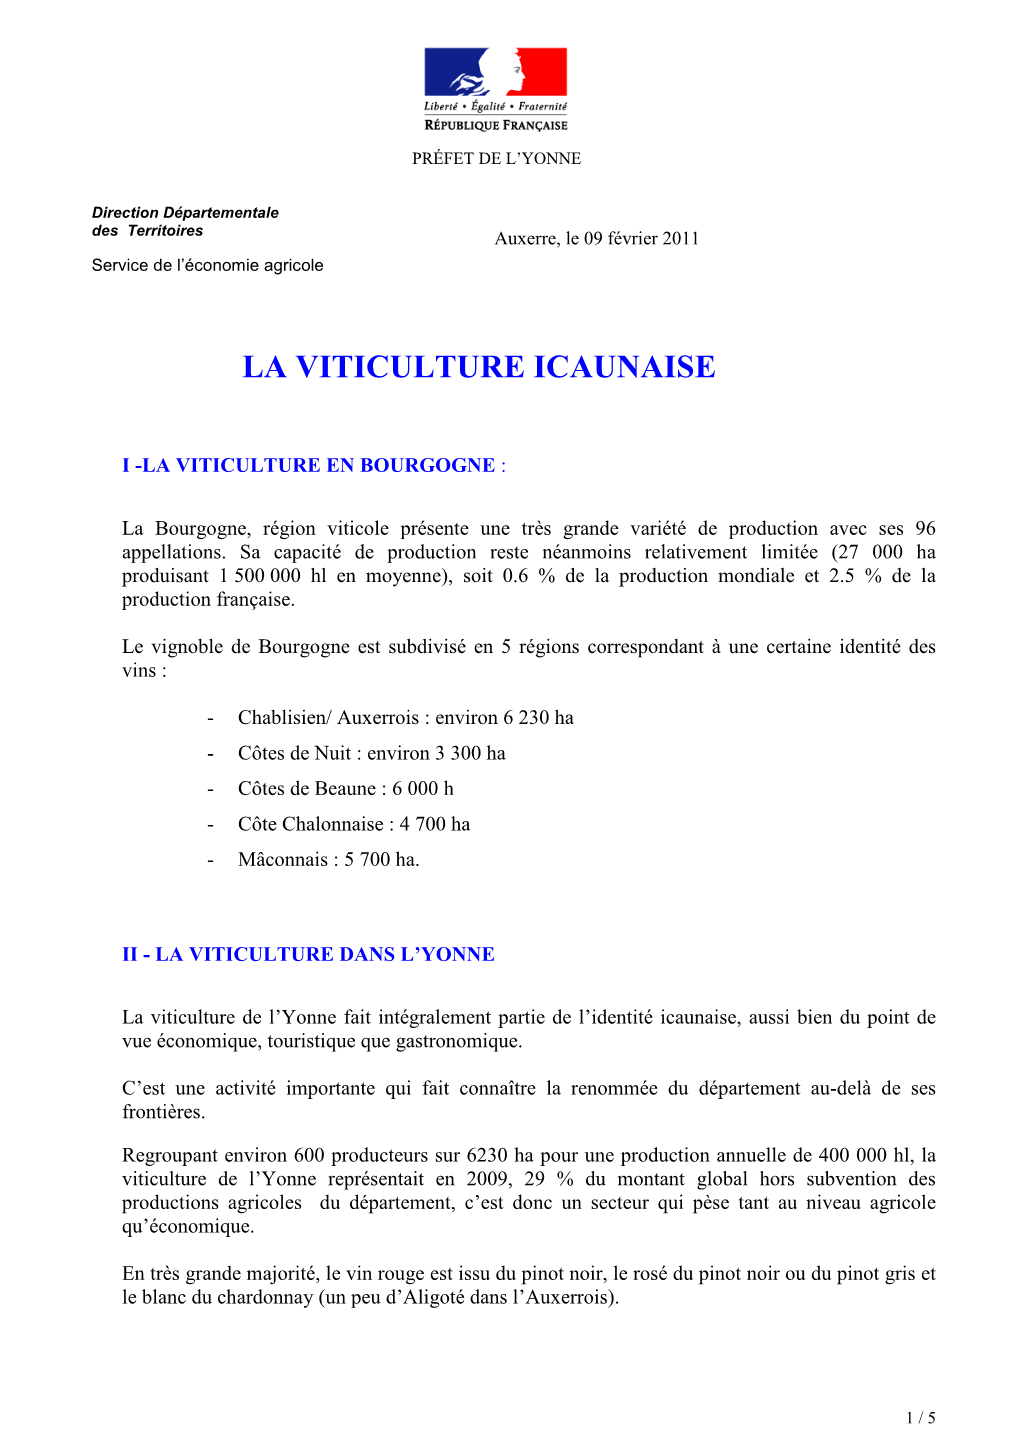 Note De Présentation De La Viticulture Icaunaise